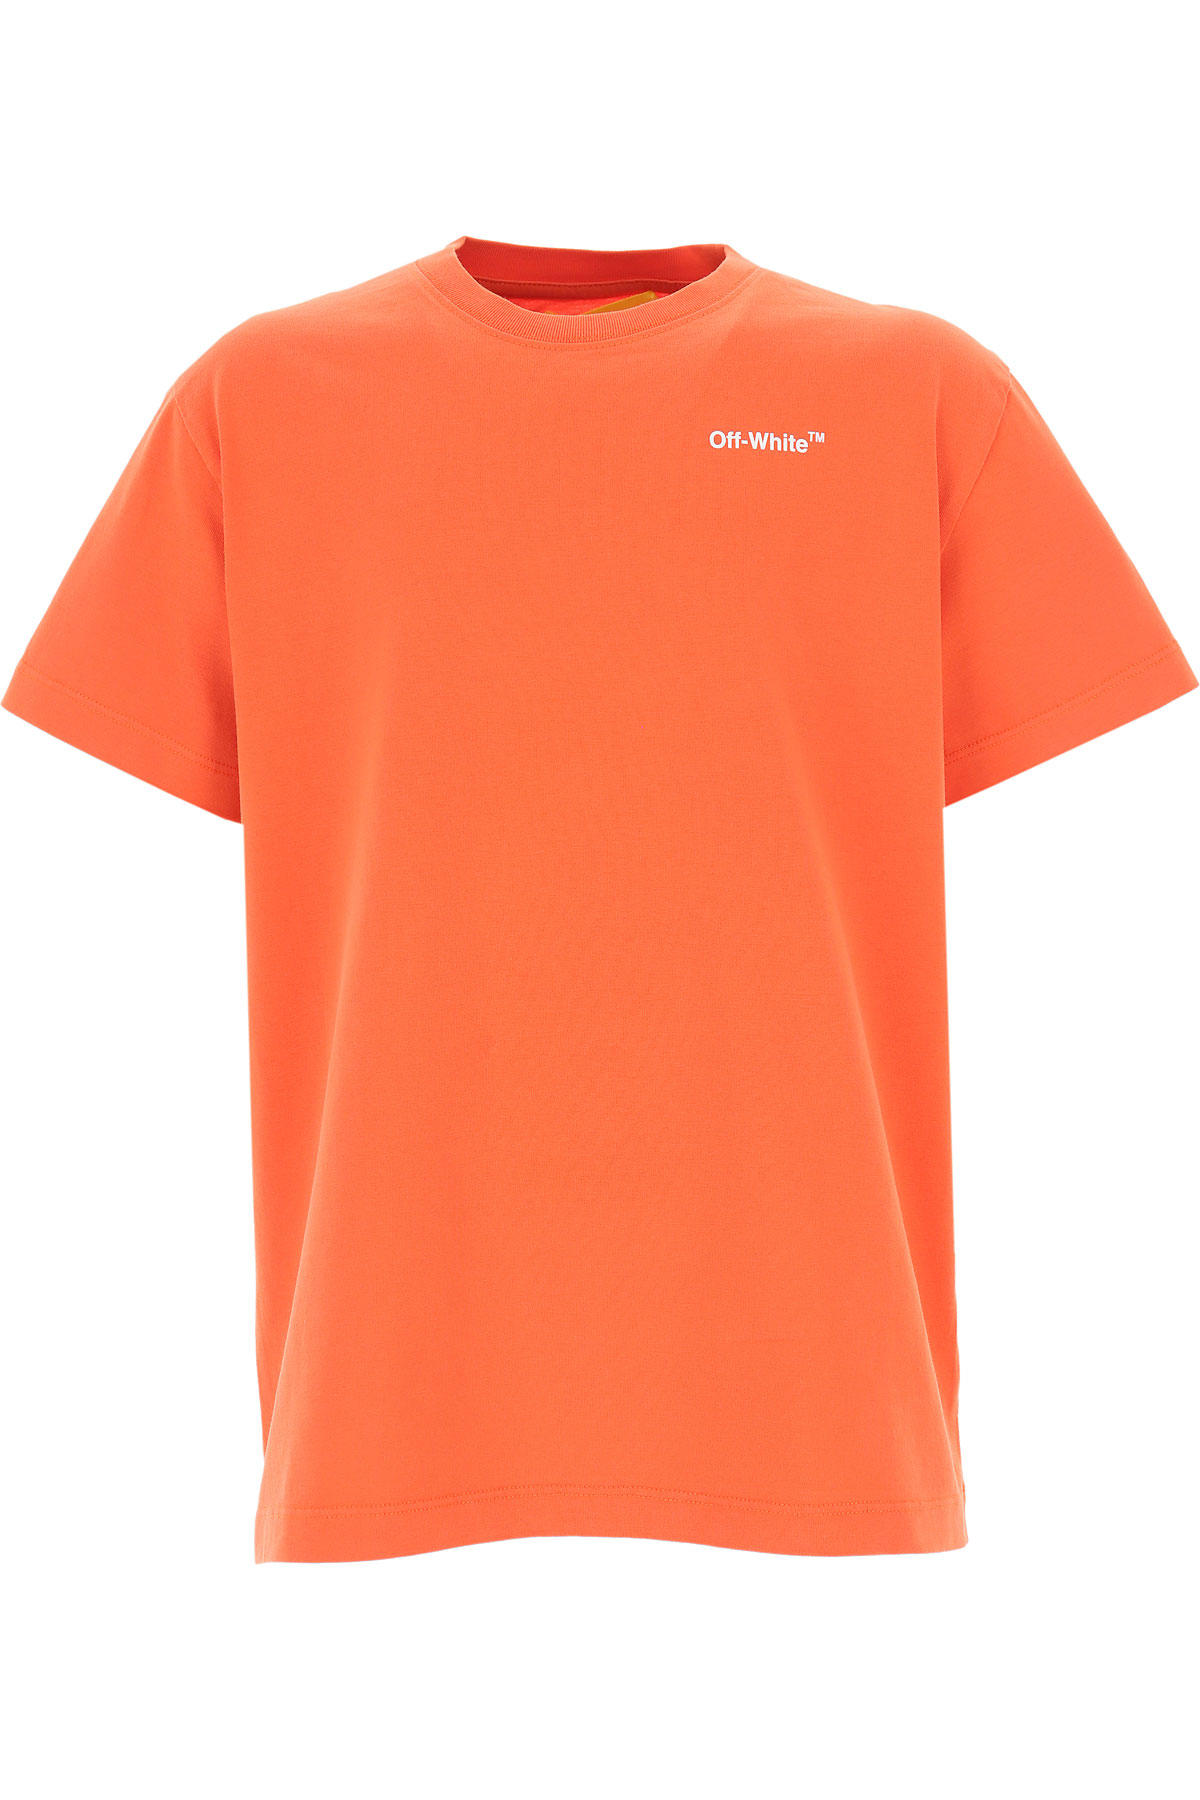 abloh shirt orange